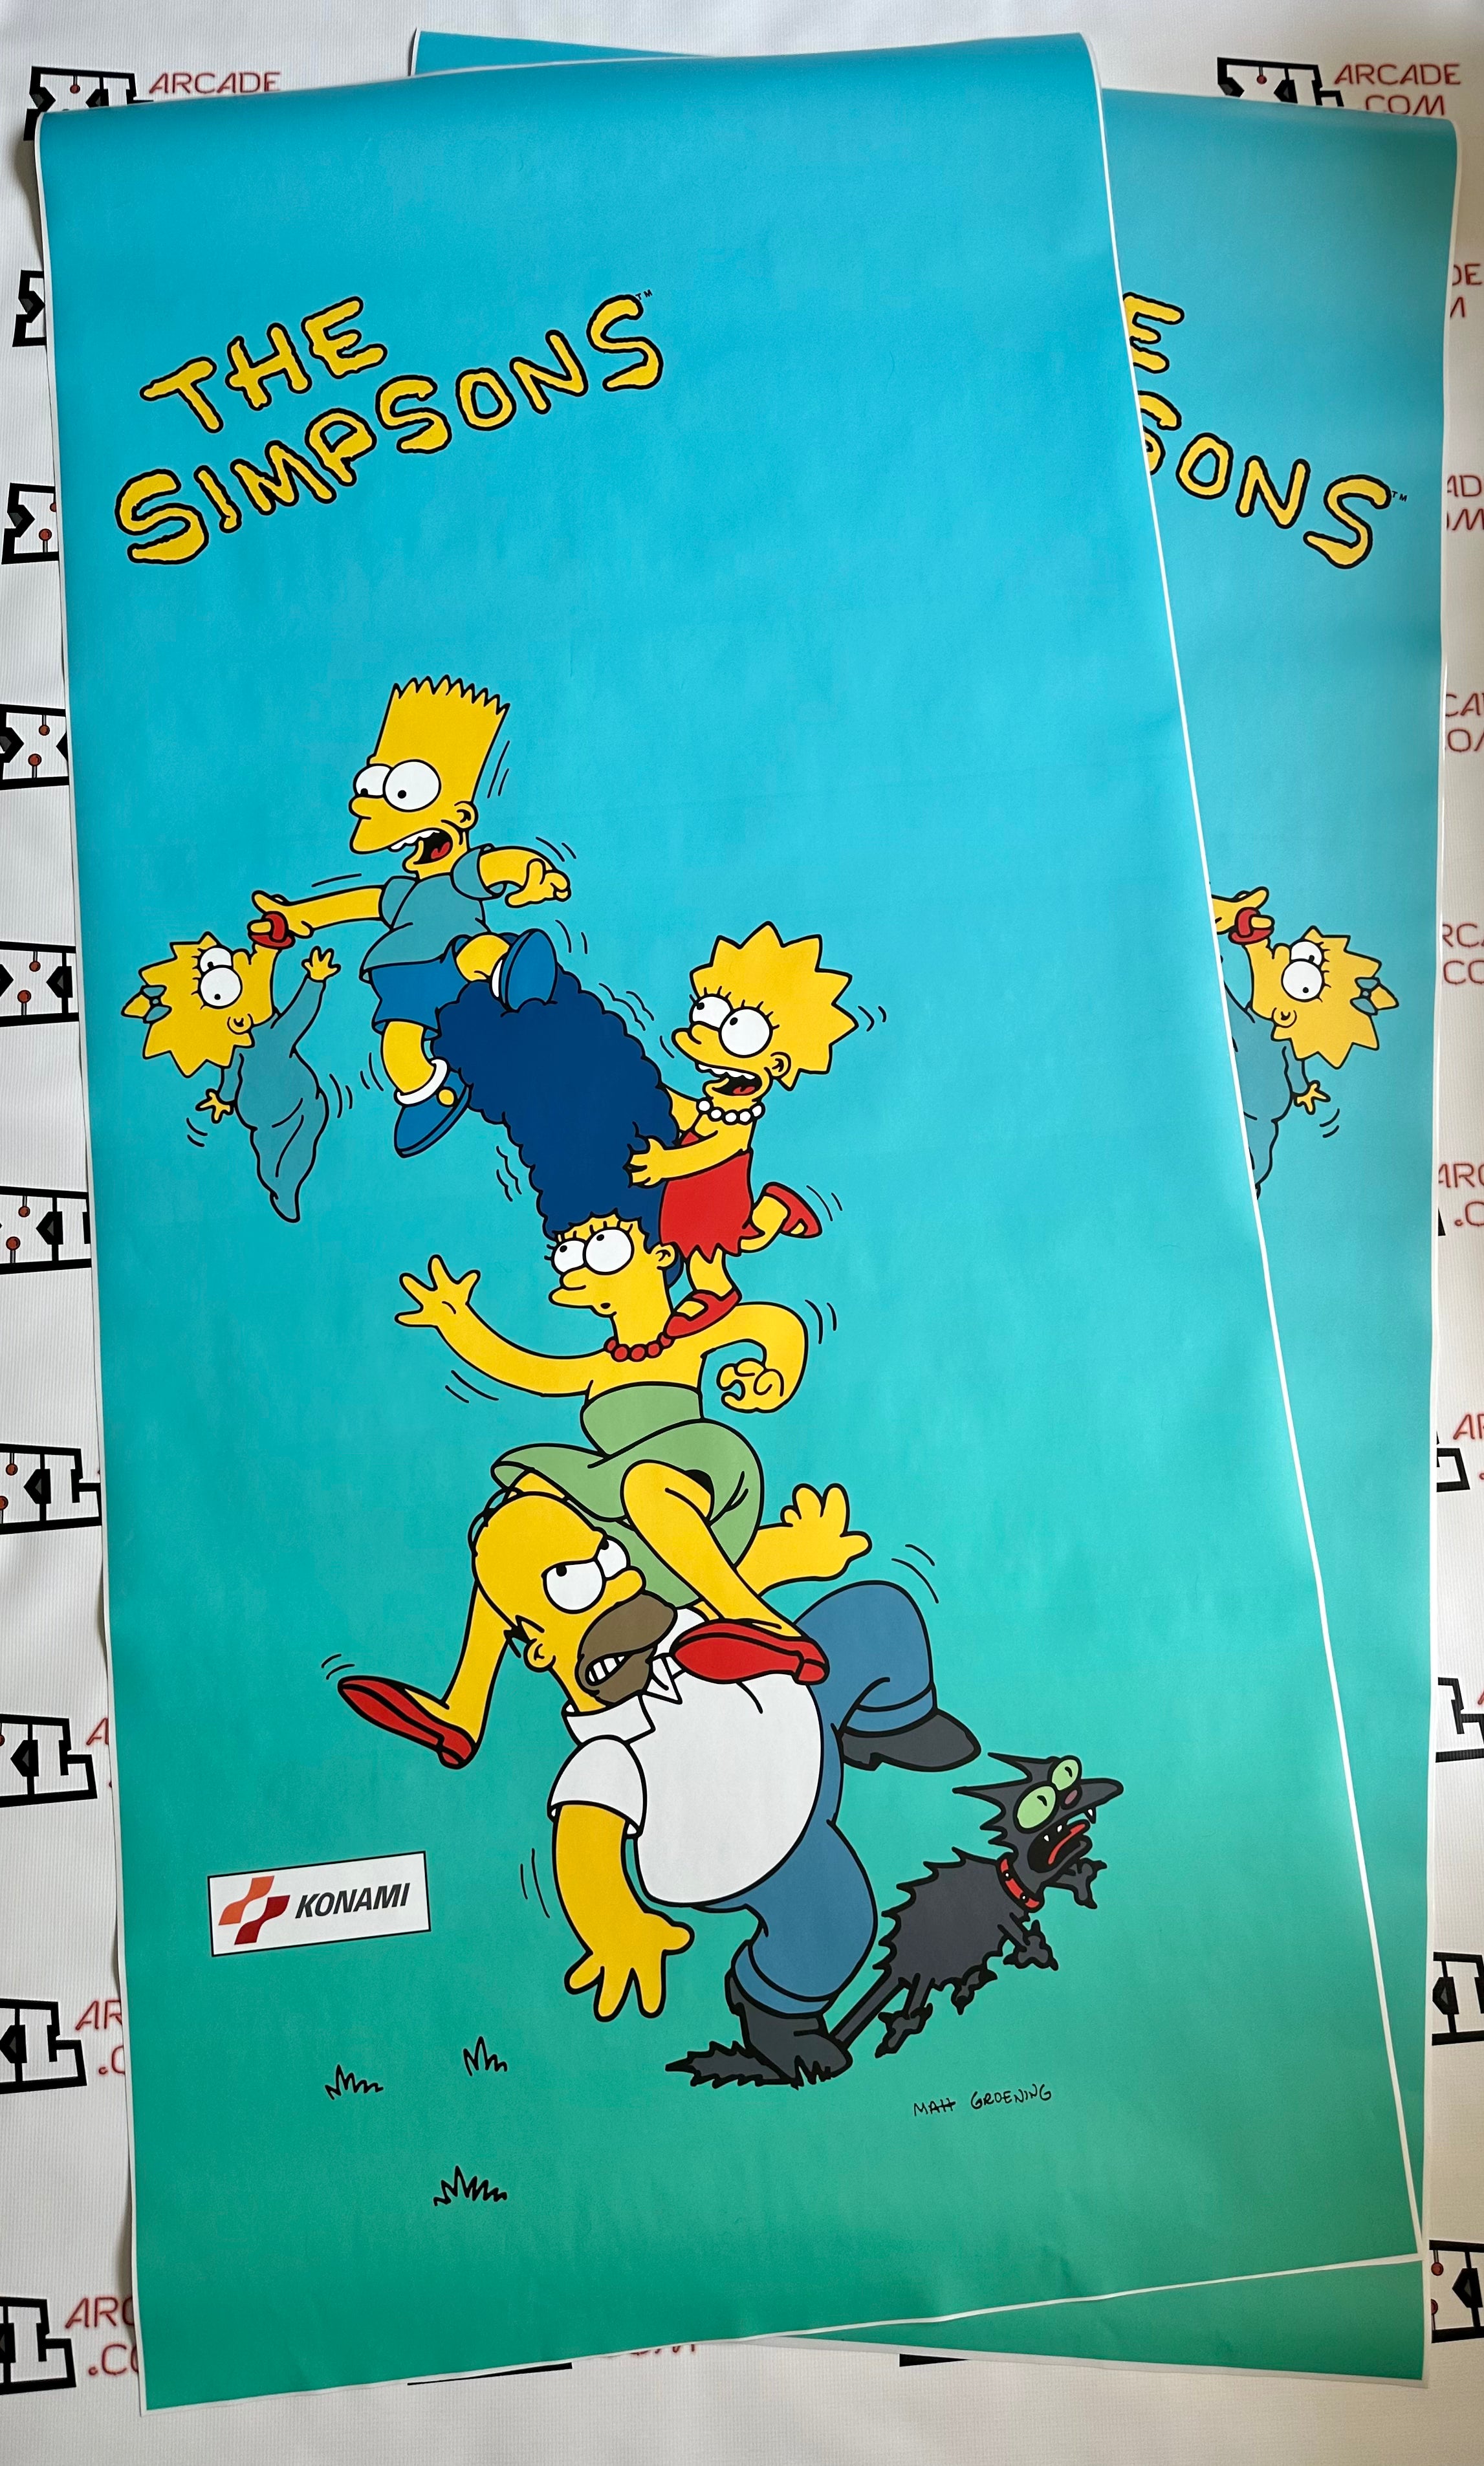 Art latéral des Simpsons avec dégradé